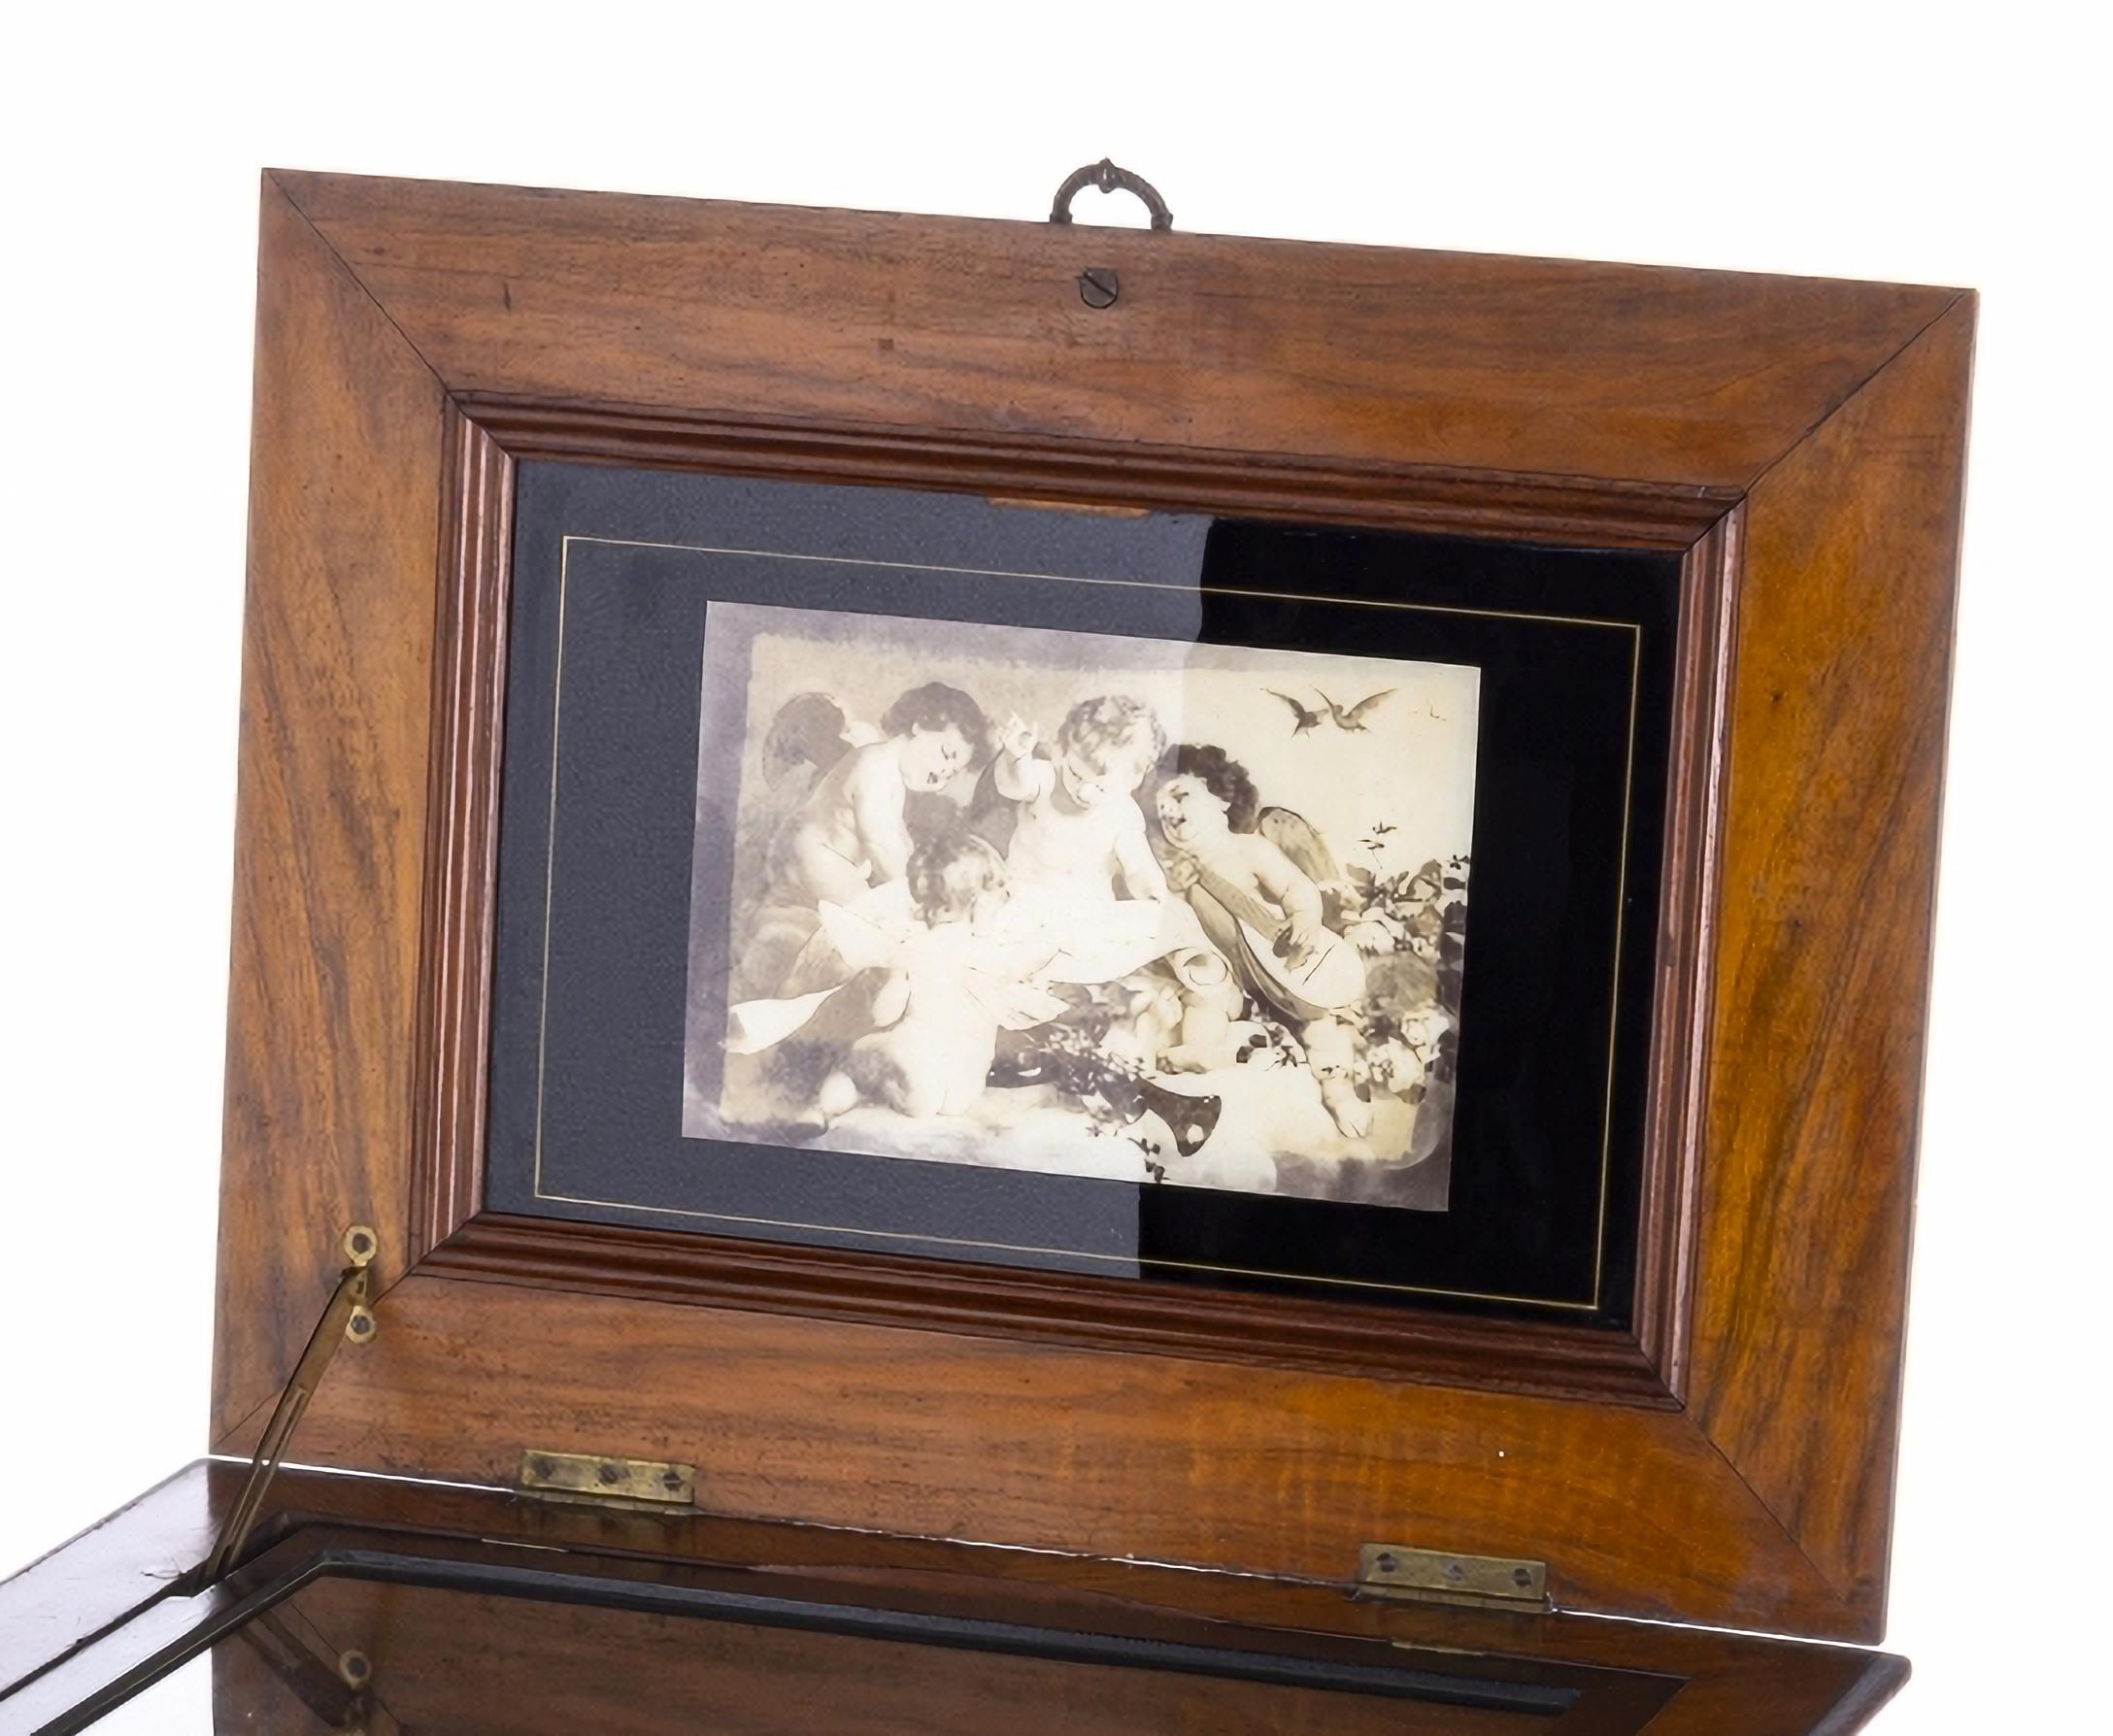 SELTENE EUROPÄISCHE SPIELDOSE
19. Jahrhundert
Europäisch, Schachtel mit 50 Scheiben von 30 cm, Doppelkamm, hergestellt im späten 19. Jahrhundert. 
Steinauge mit Metallapplikation verschlossen. 
Deckel mit Vogel- und Pflanzenmotiven verziert.